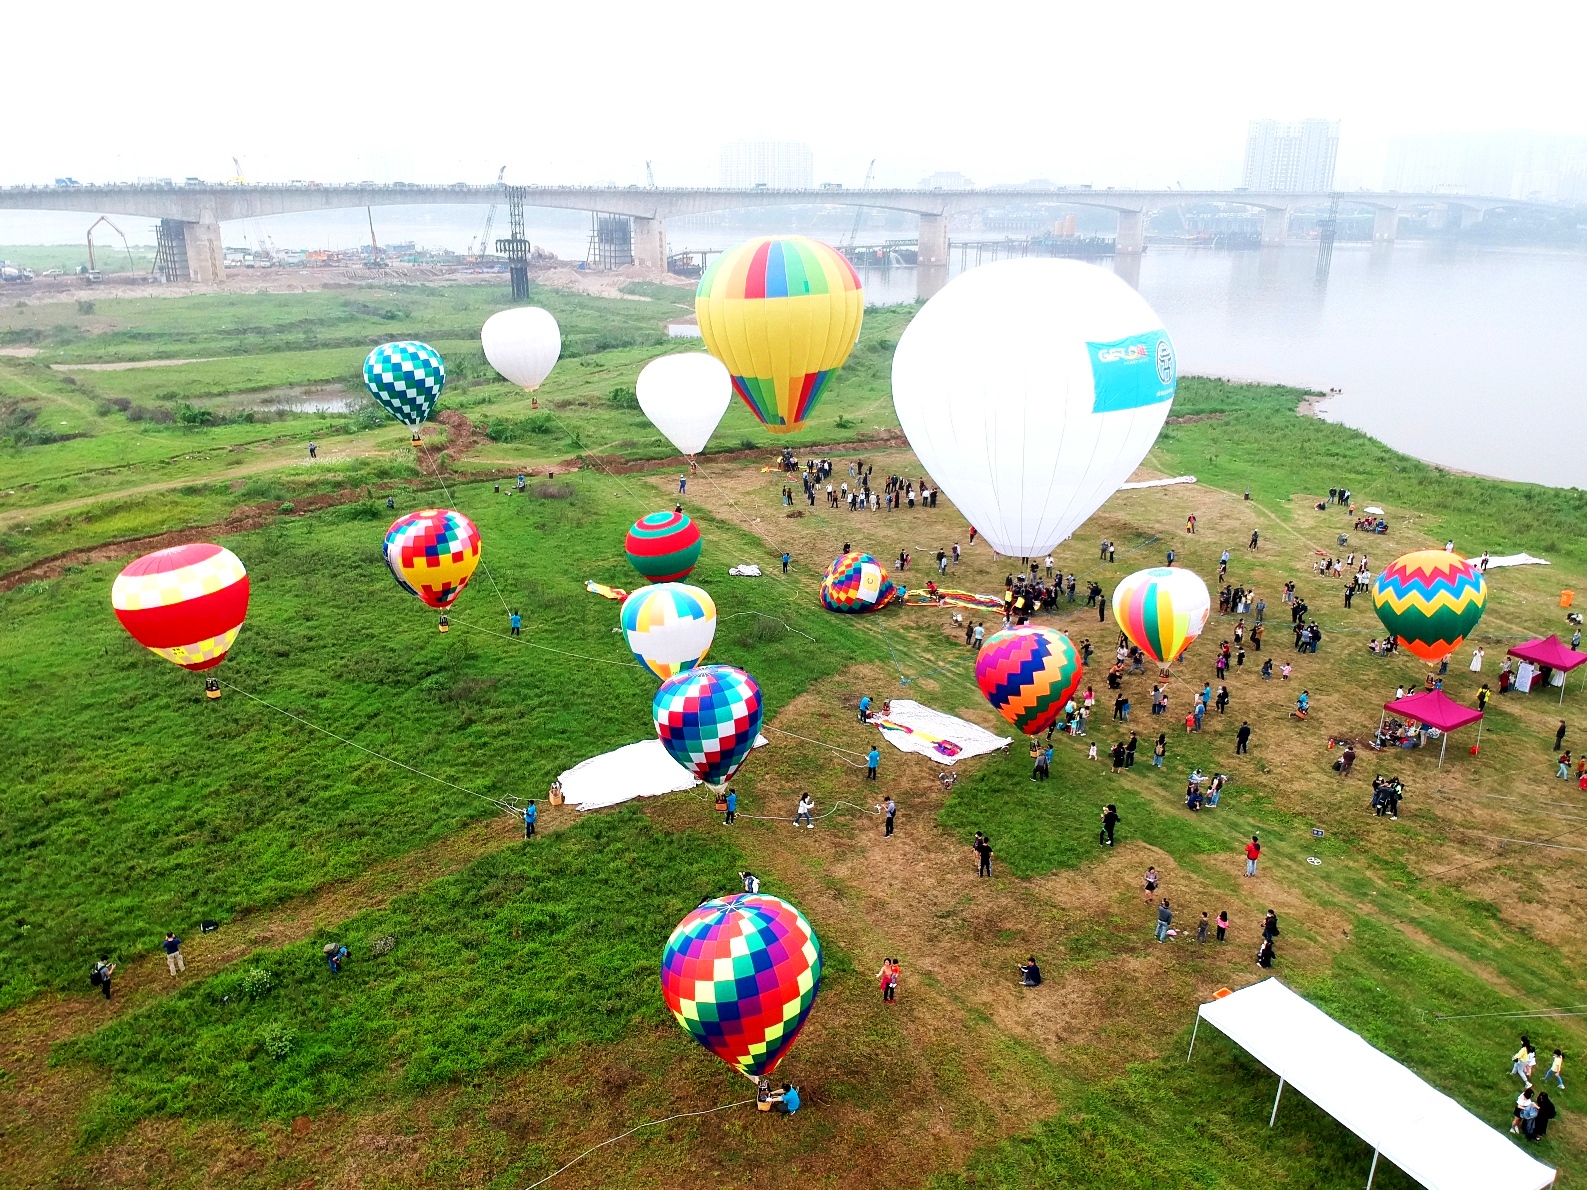 Ngày hội khinh khí cầu – “Hà Nội muôn màu” là sự kiện này nằm trong khuôn khổ chương trình “Du lịch Hà Nội chào 2022 - Get on Hanoi 2022